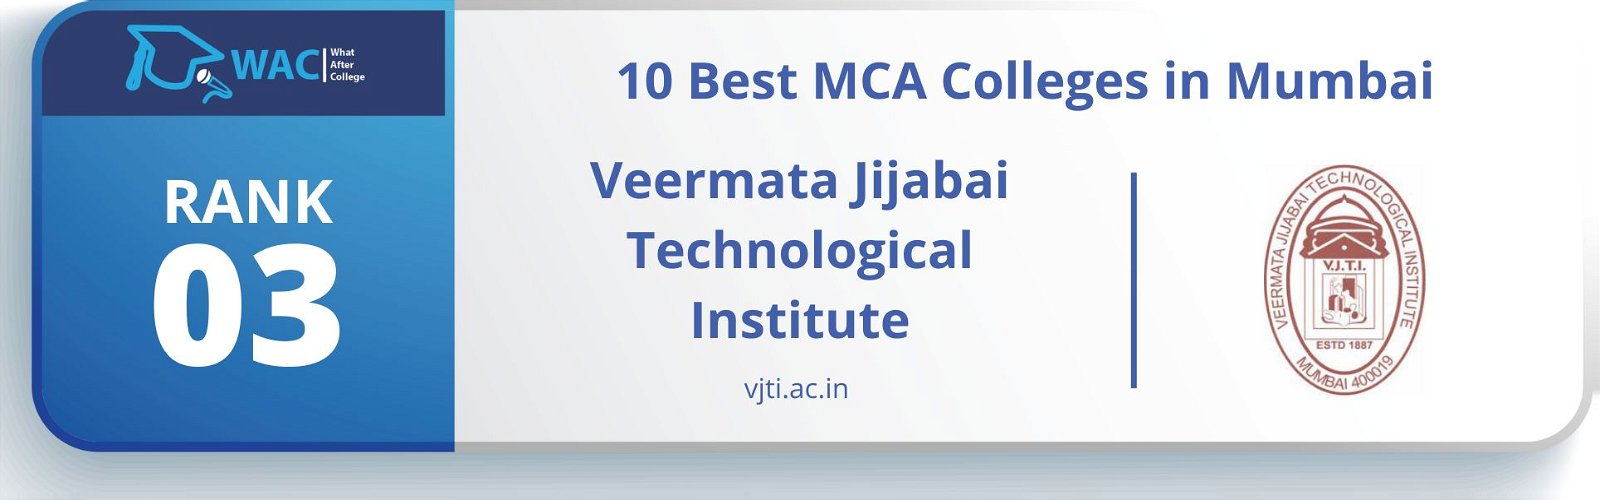 best mca colleges in mumbai